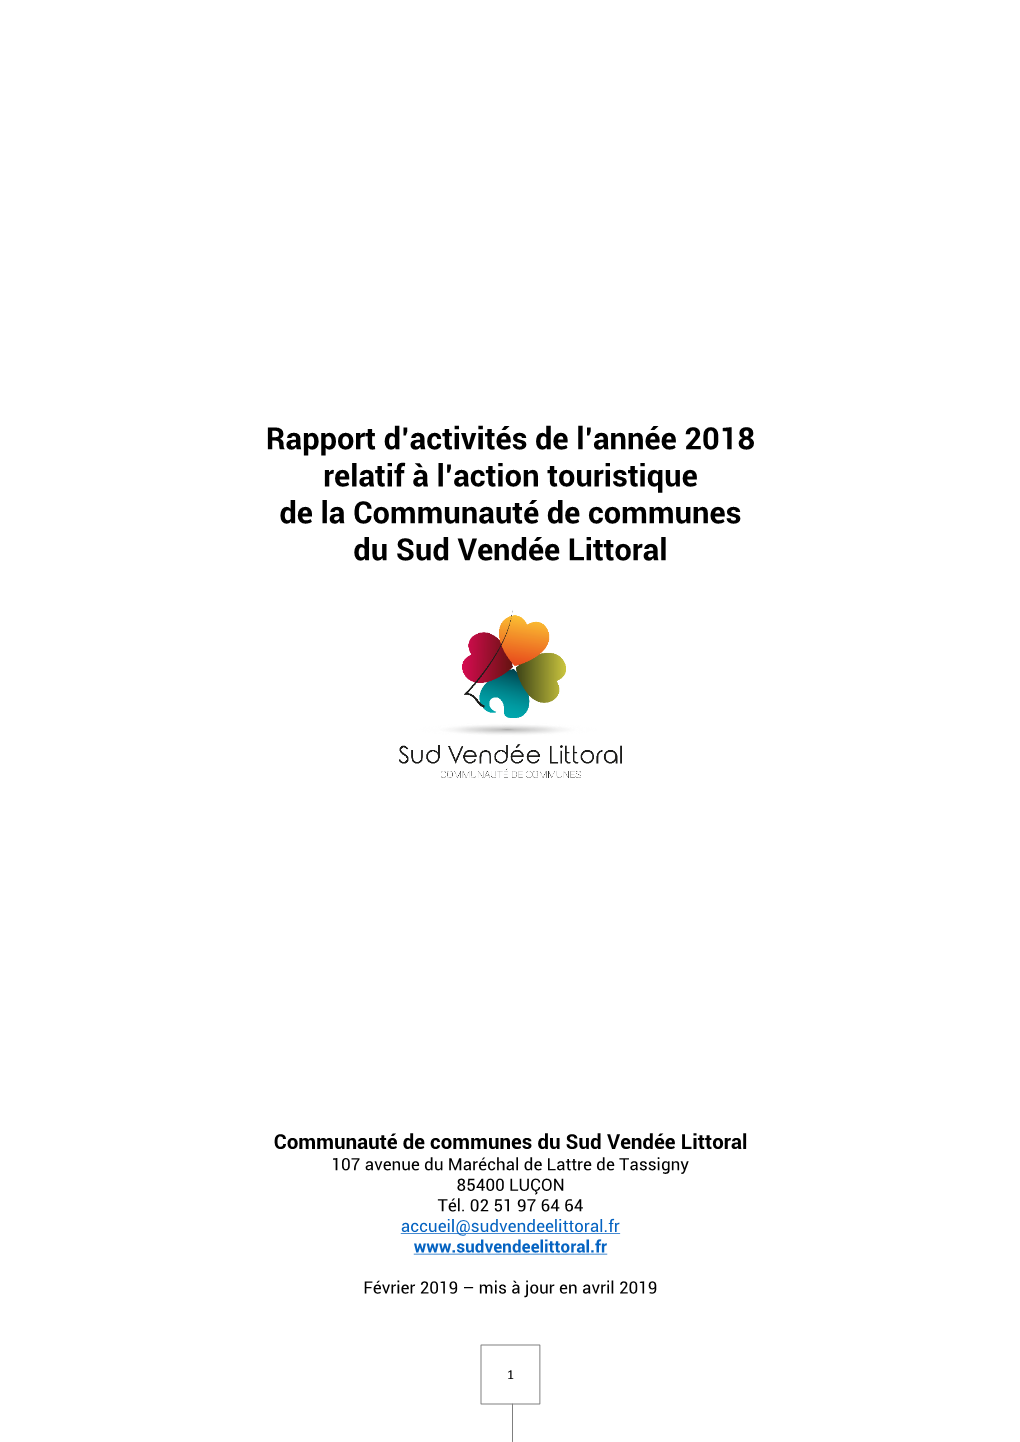 Rapport D'activités De L'année 2018 Relatif À L'action Touristique De La